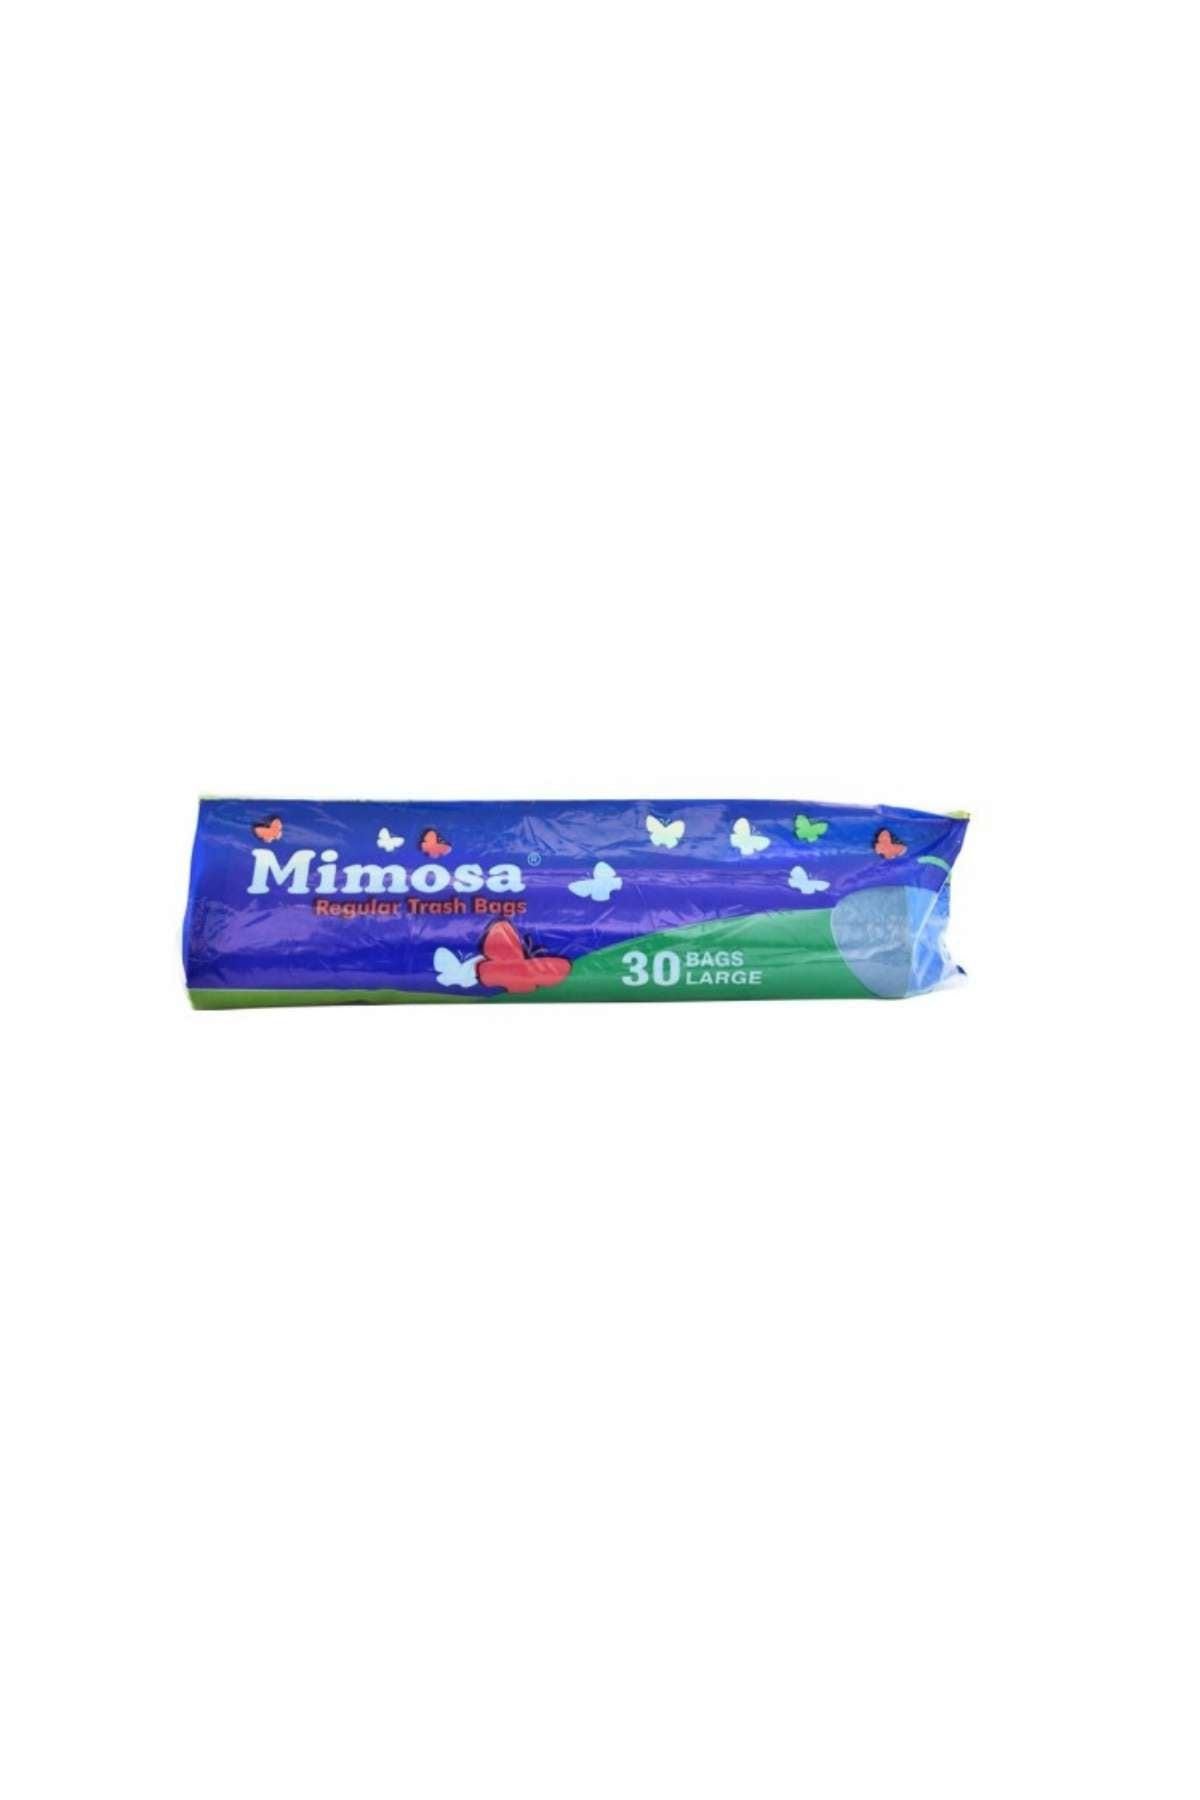 Mimosa Regular Trash Bags ( 30 Bags Large ) 40200500